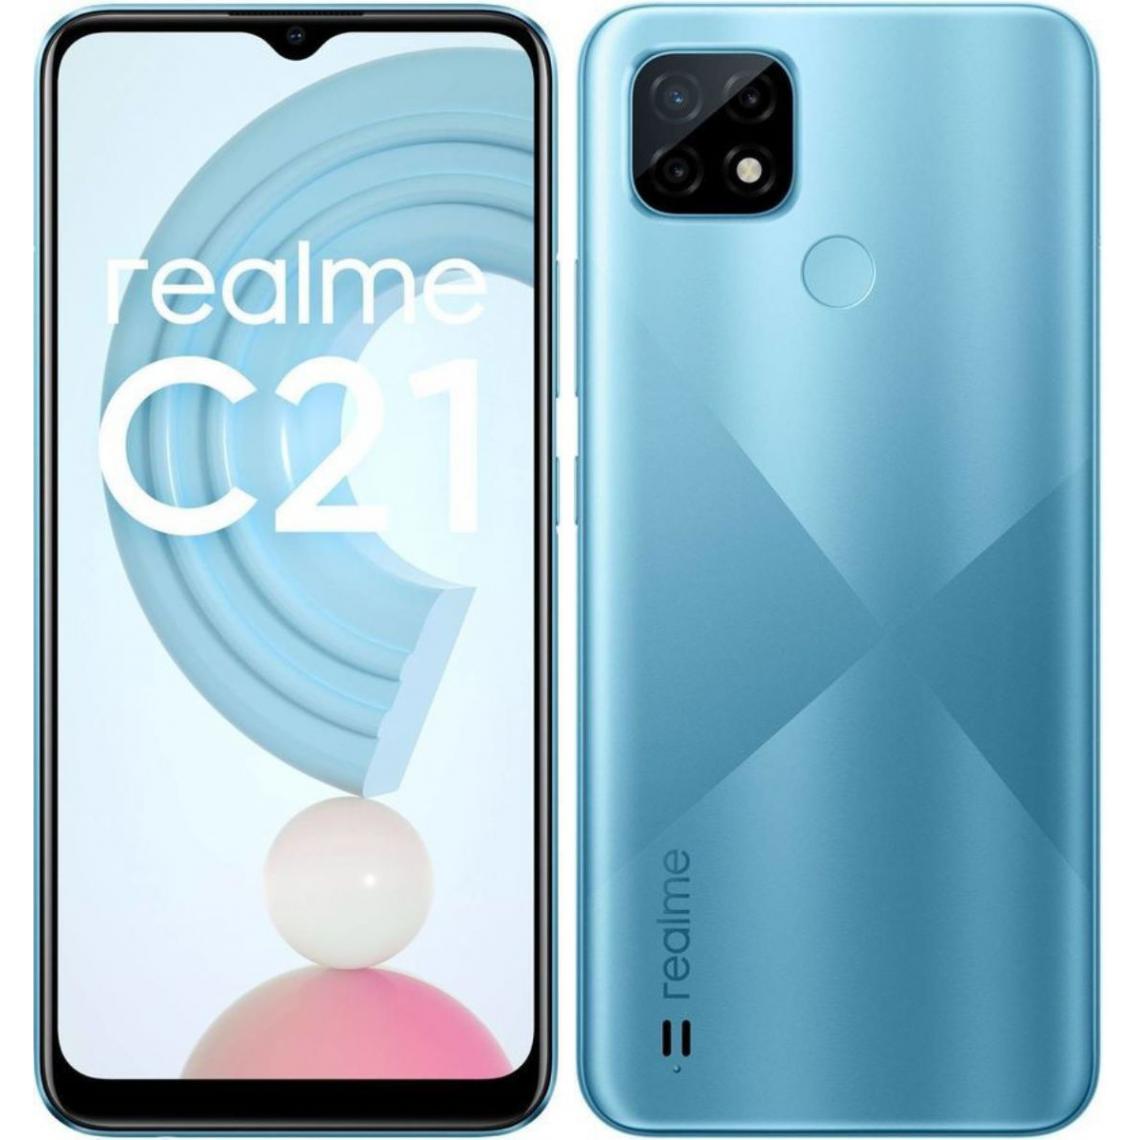 Realme - C21 3/32 Go - Bleu - Smartphone Android